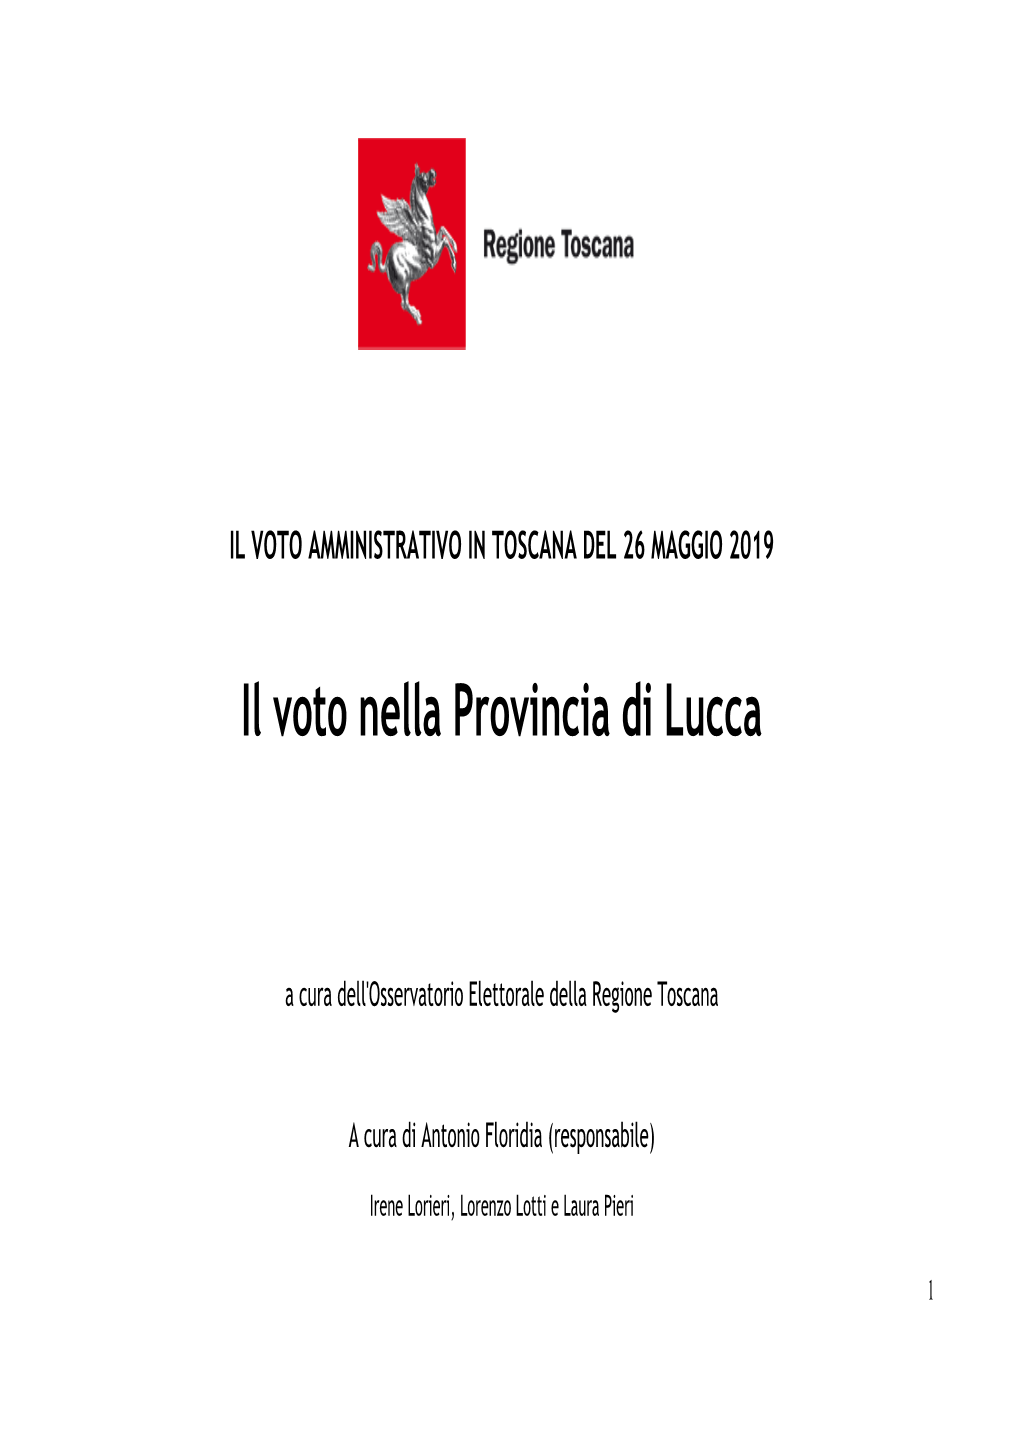 Il Voto Nella Provincia Di Lucca